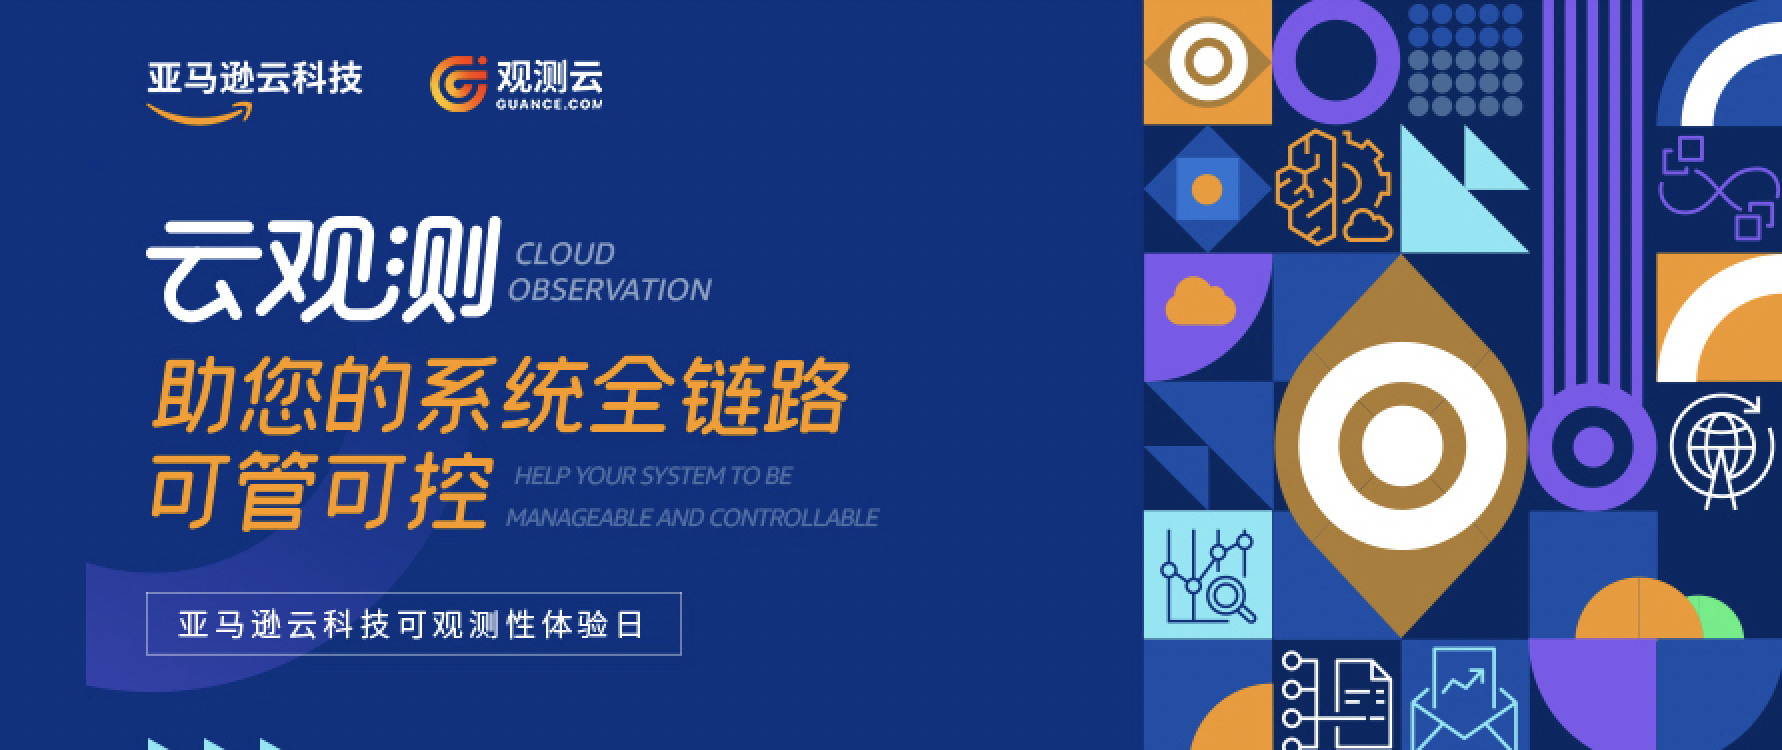 观测云&亚马逊云科技「可观测性体验日」北京站圆满落幕